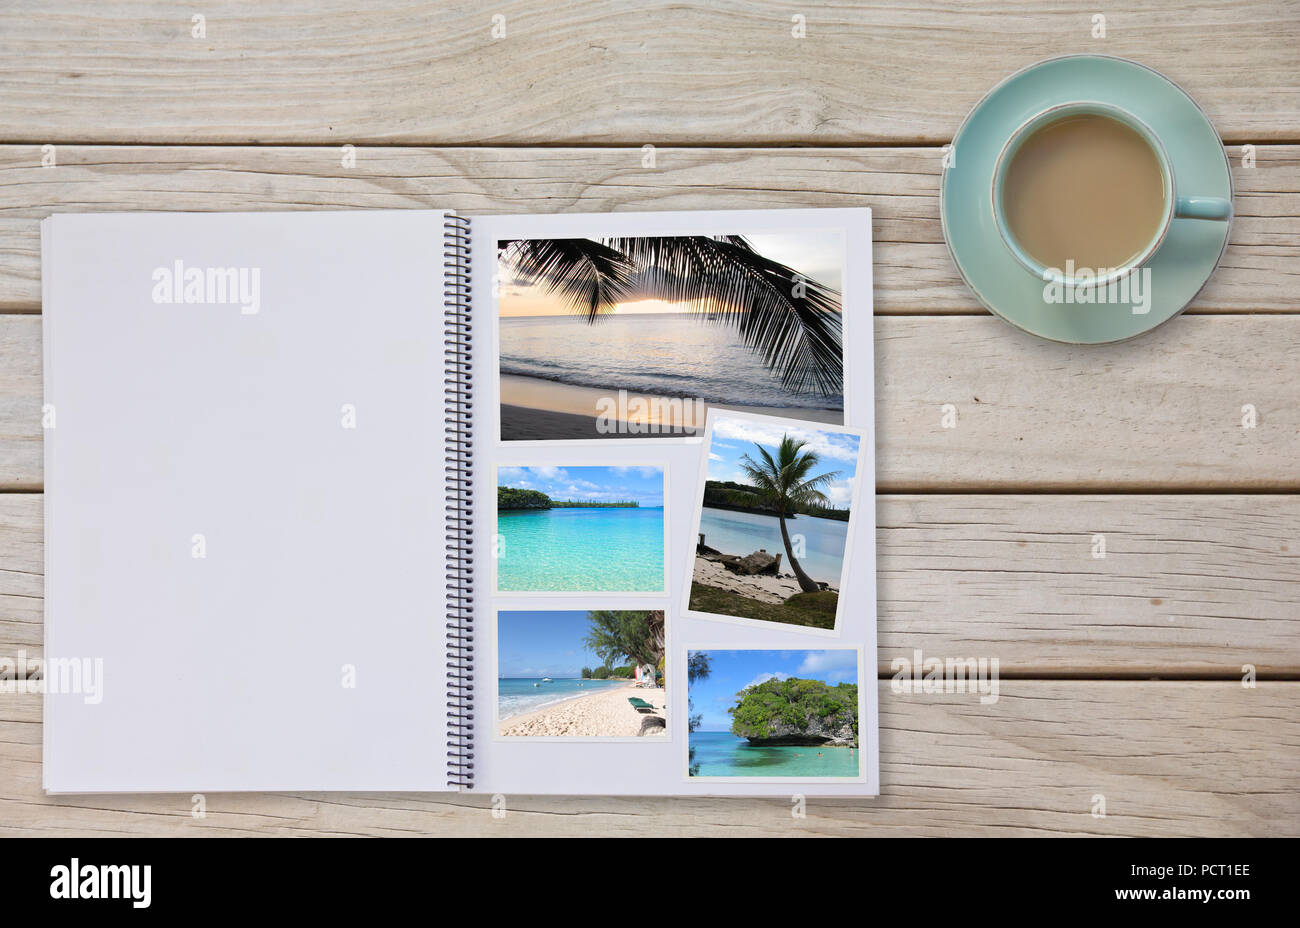 Album fotografico sul ponte tabella con fotografie di viaggio di spiagge e tè o caffè in tazza Foto Stock